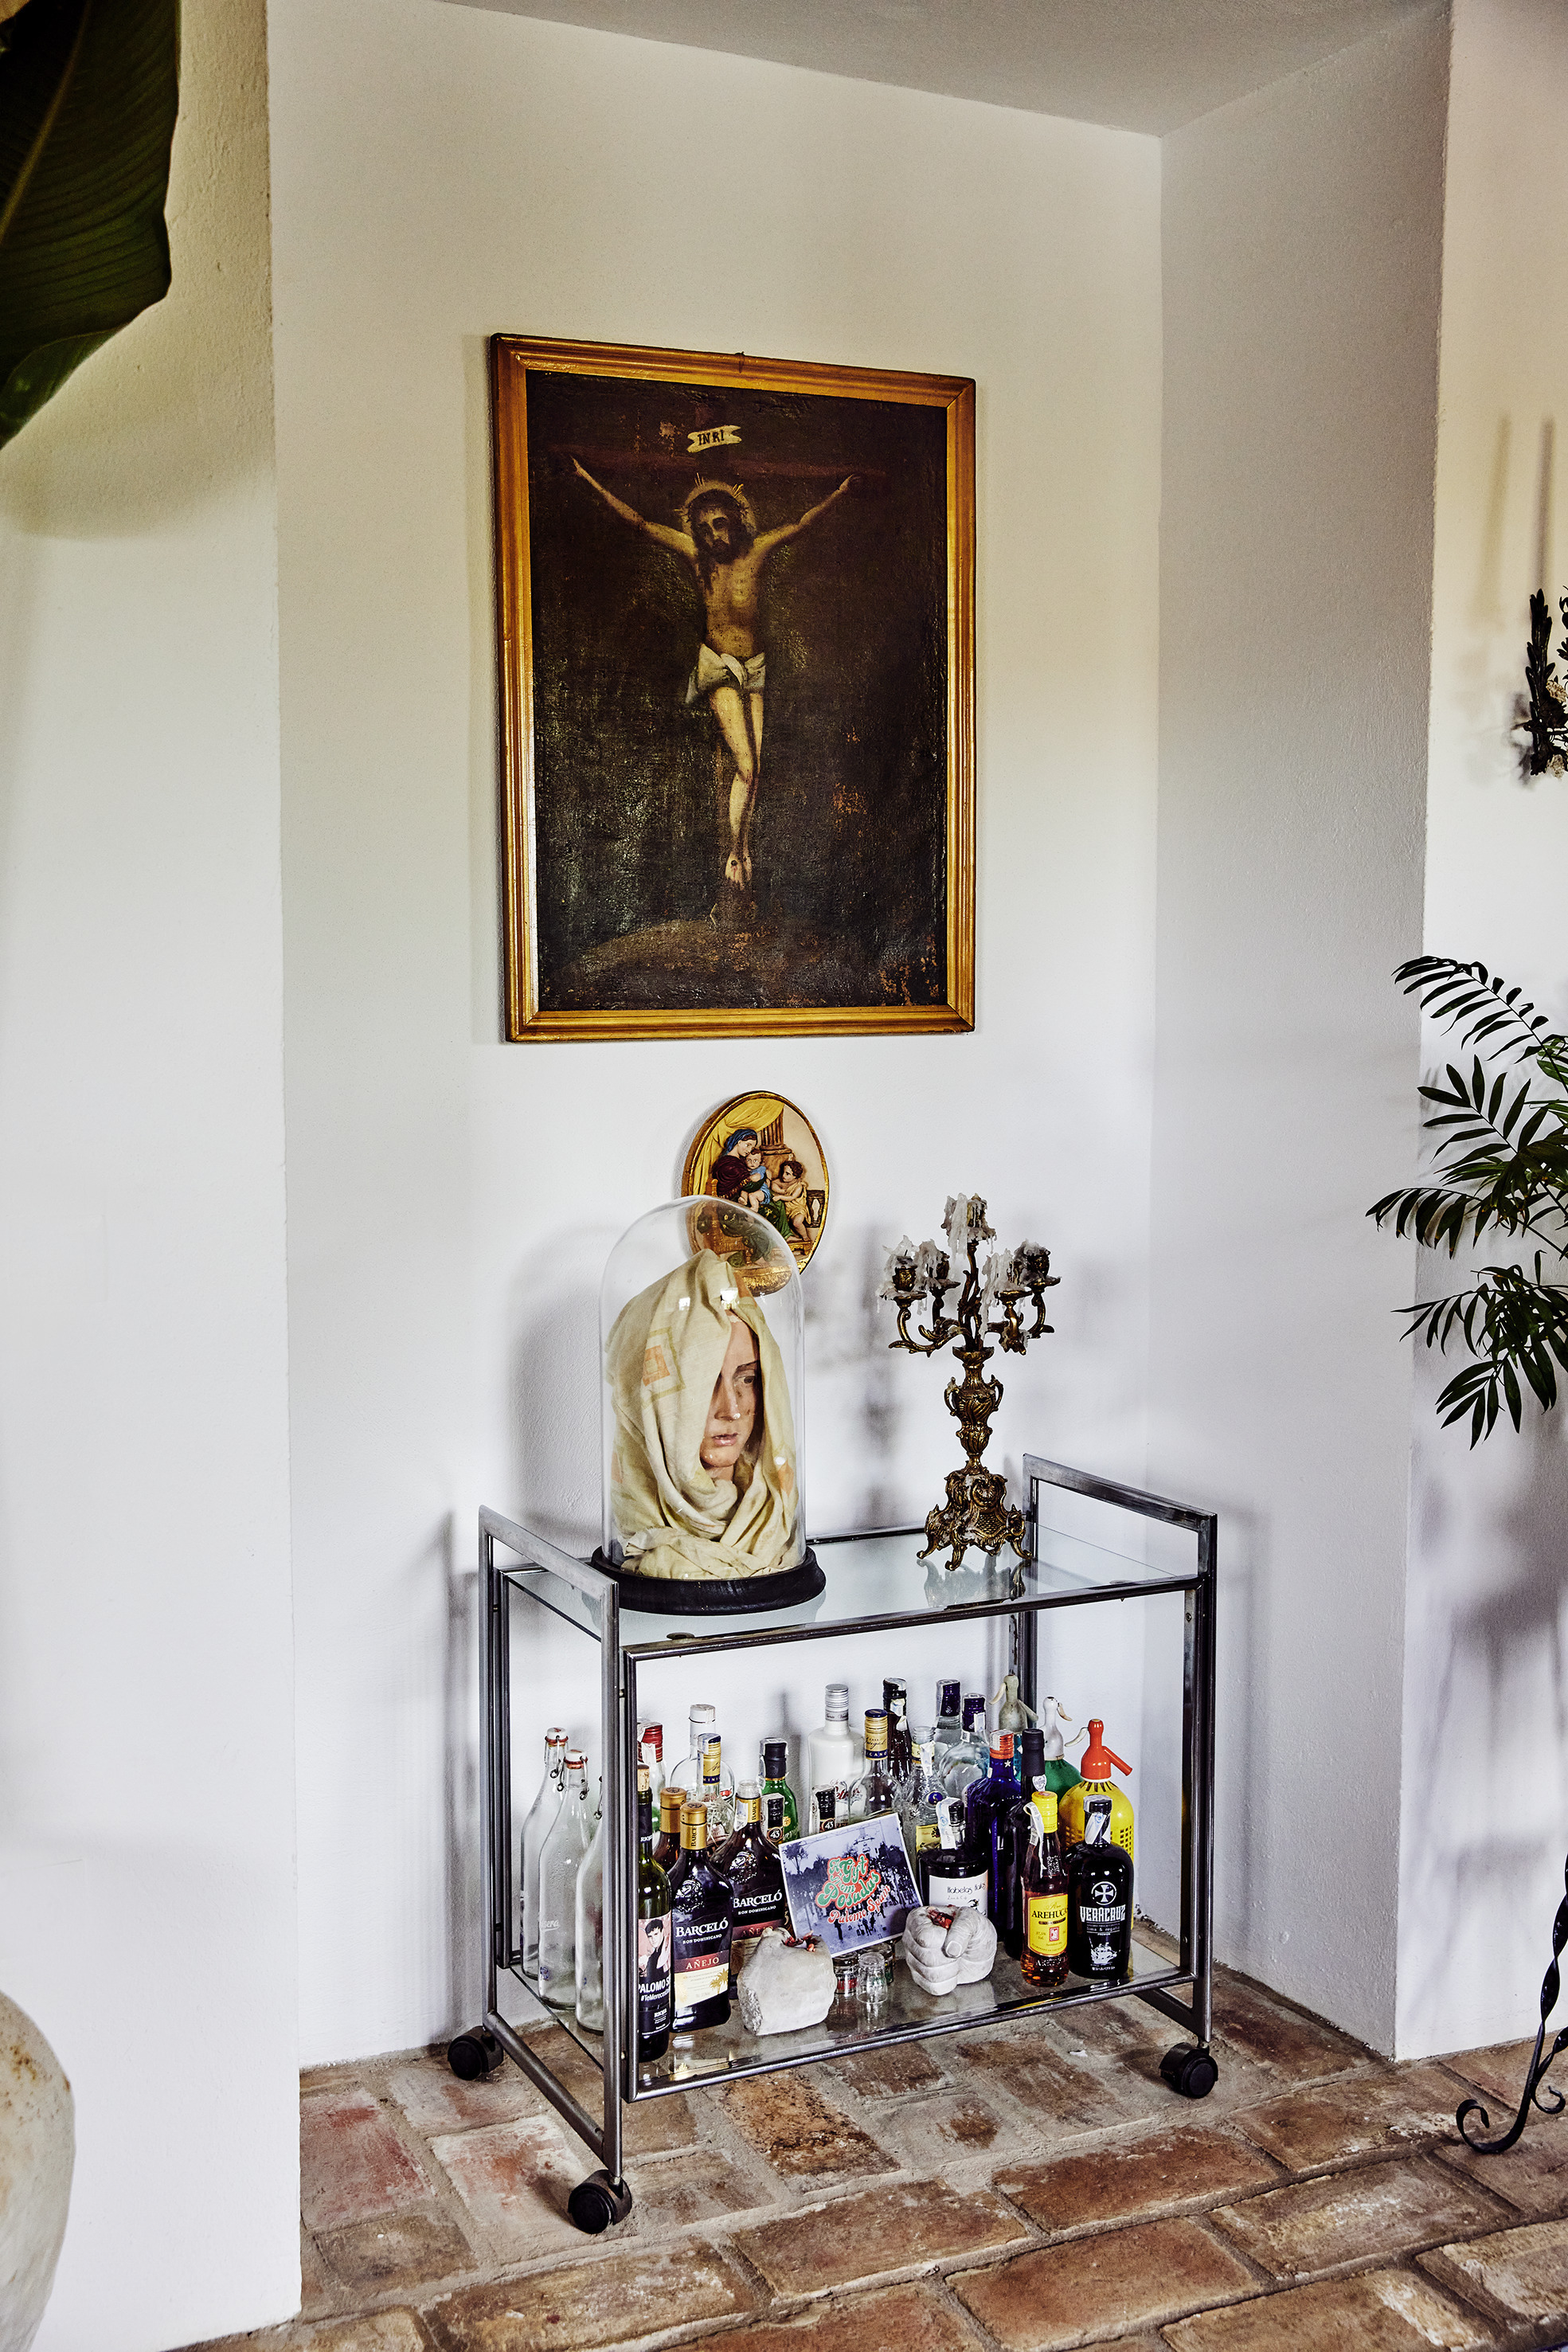 En el mueble bar, destaca el rostro de la Virgen dentro de una urna que antes se encontraba en la iglesia de la parroquia.